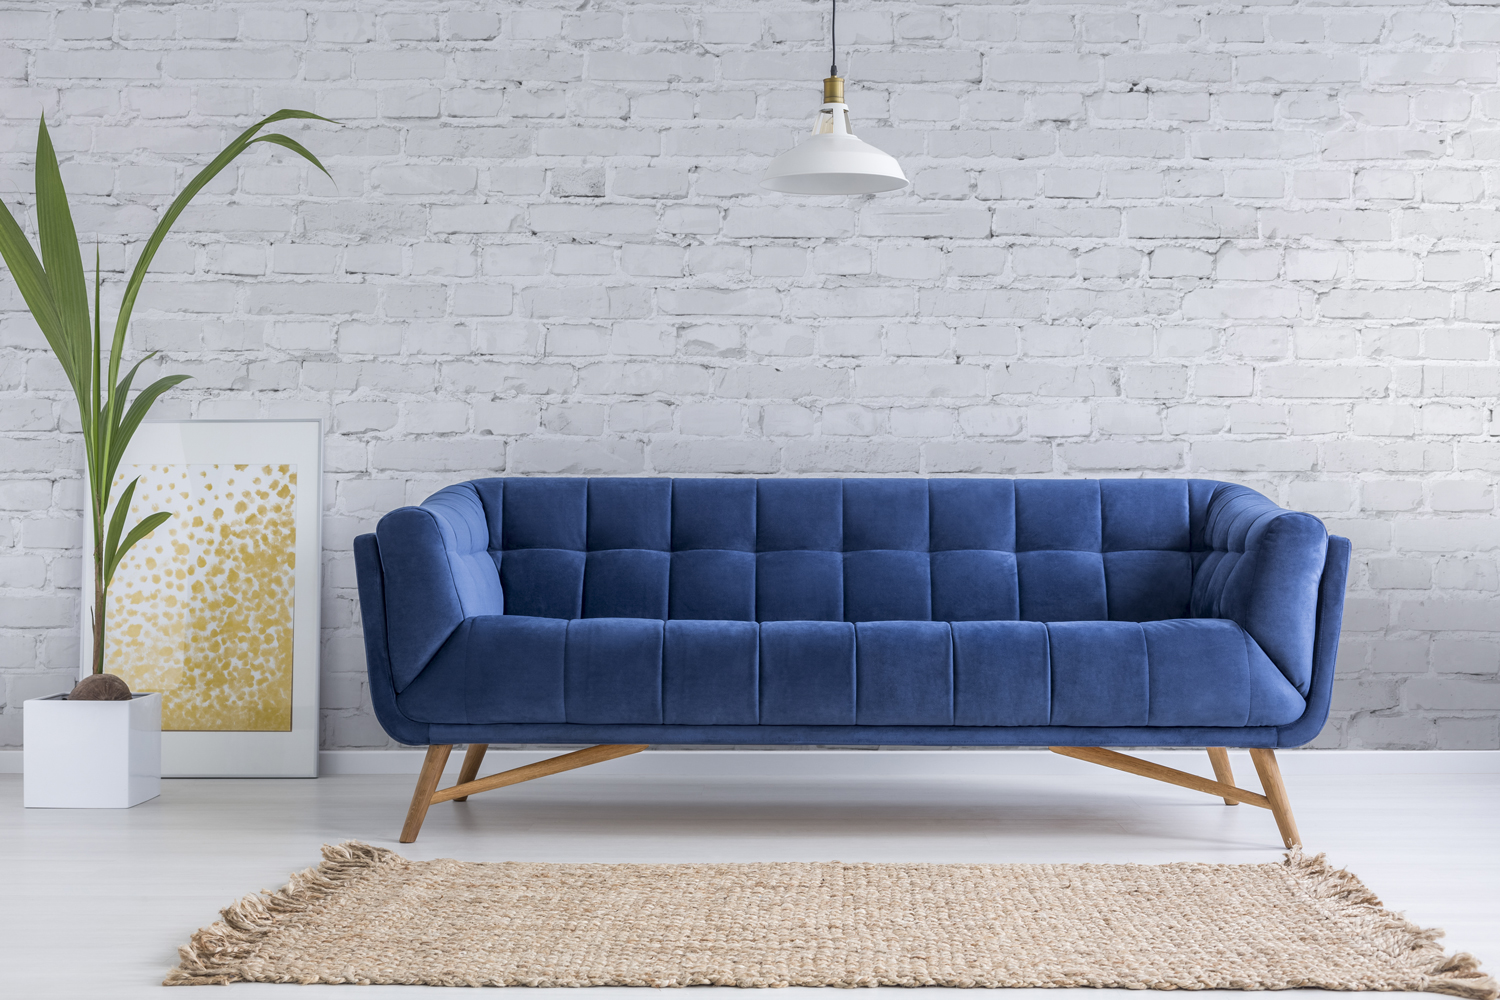 weiße backsteintapete,couch,möbel,blau,schlafsofa,wand